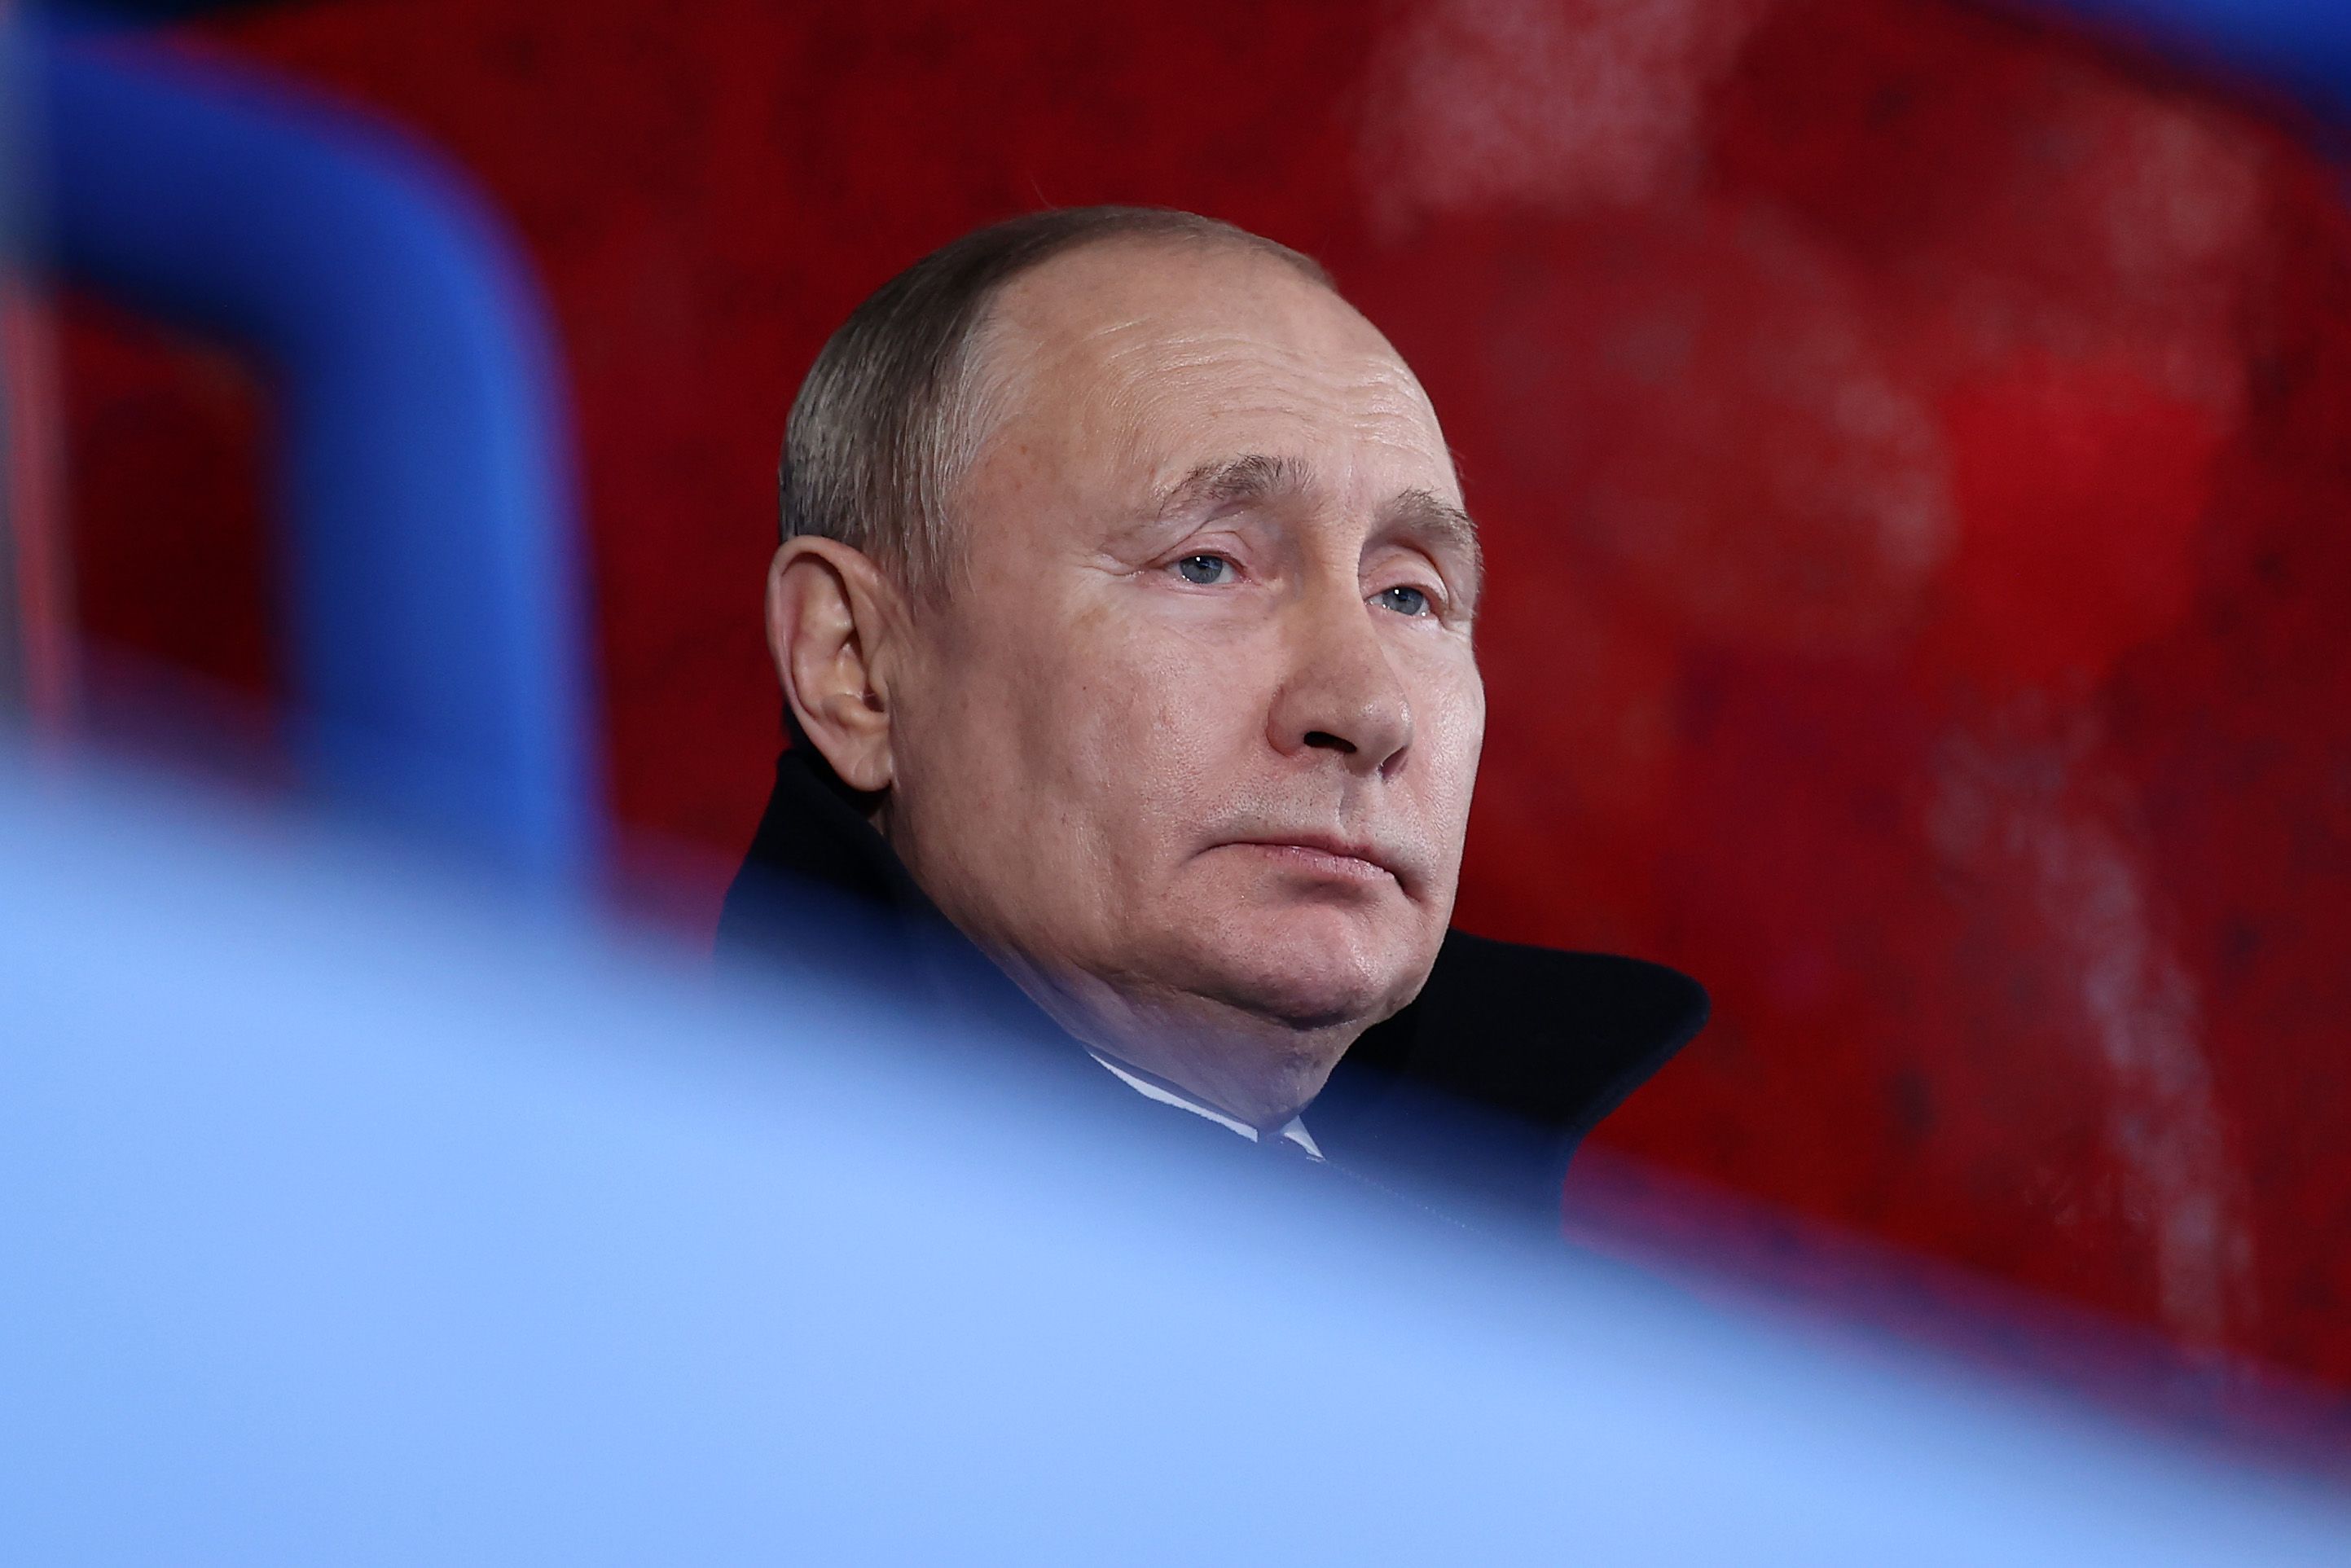 Володимир Путін буде в ізоляції, поки не виконають рішення суду